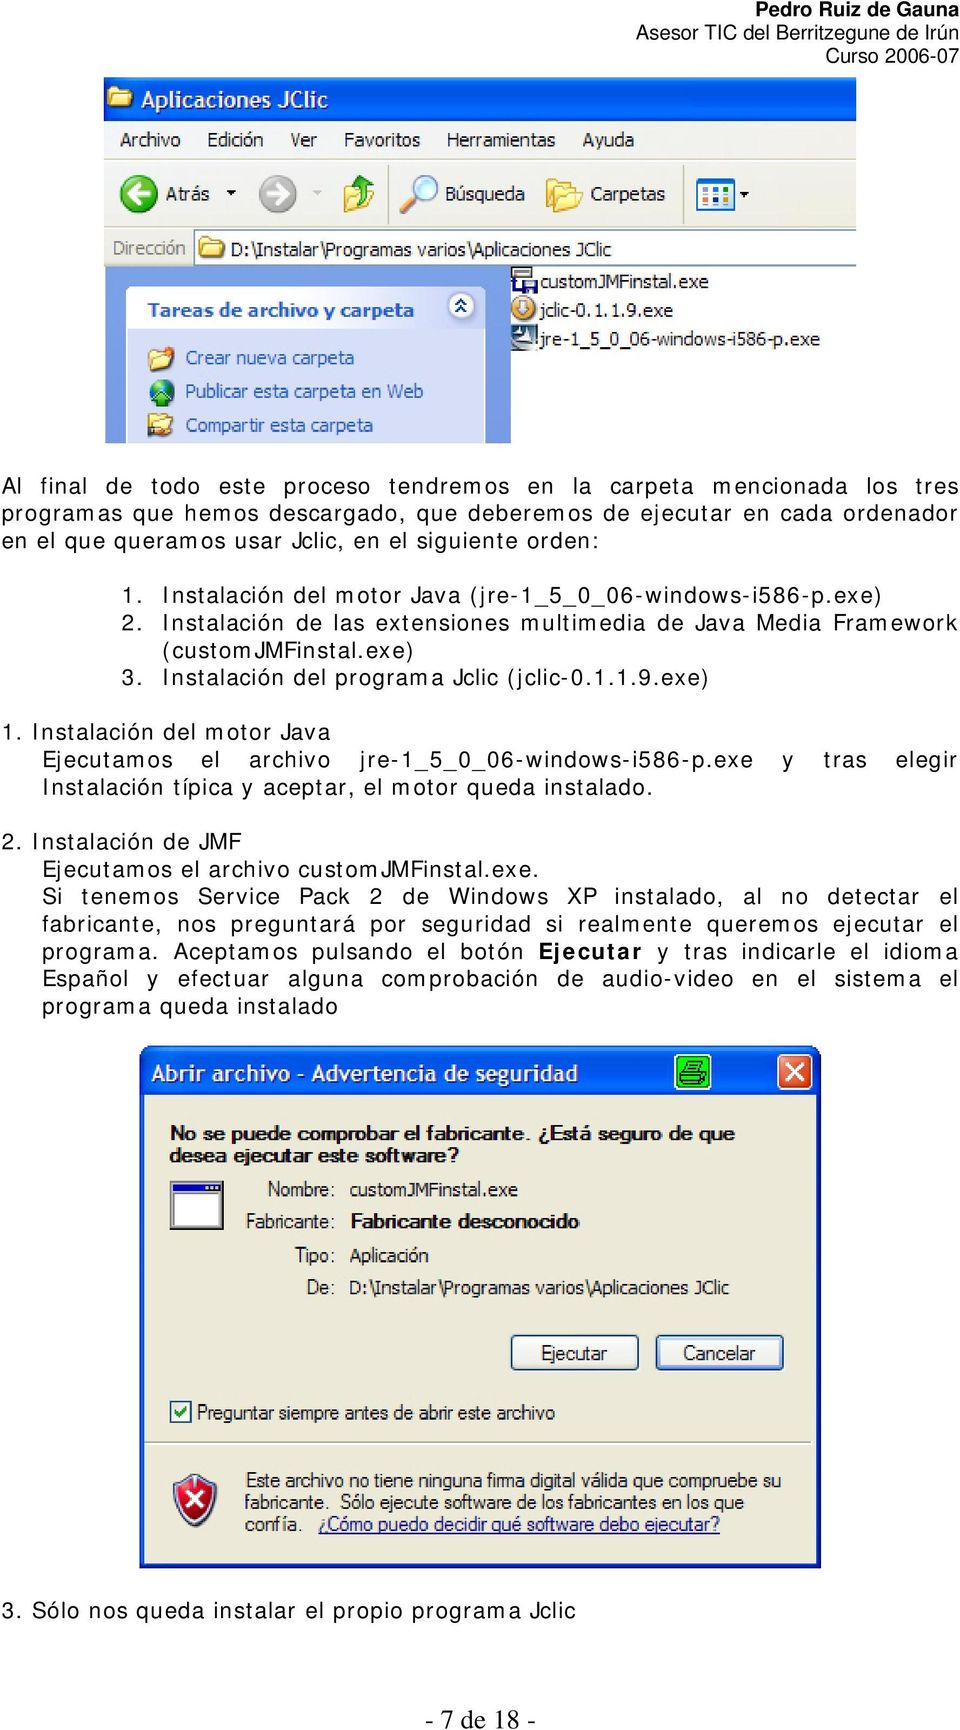 Instalación del programa Jclic (jclic-0.1.1.9.exe) 1. Instalación del motor Java Ejecutamos el archivo jre-1_5_0_06-windows-i586-p.